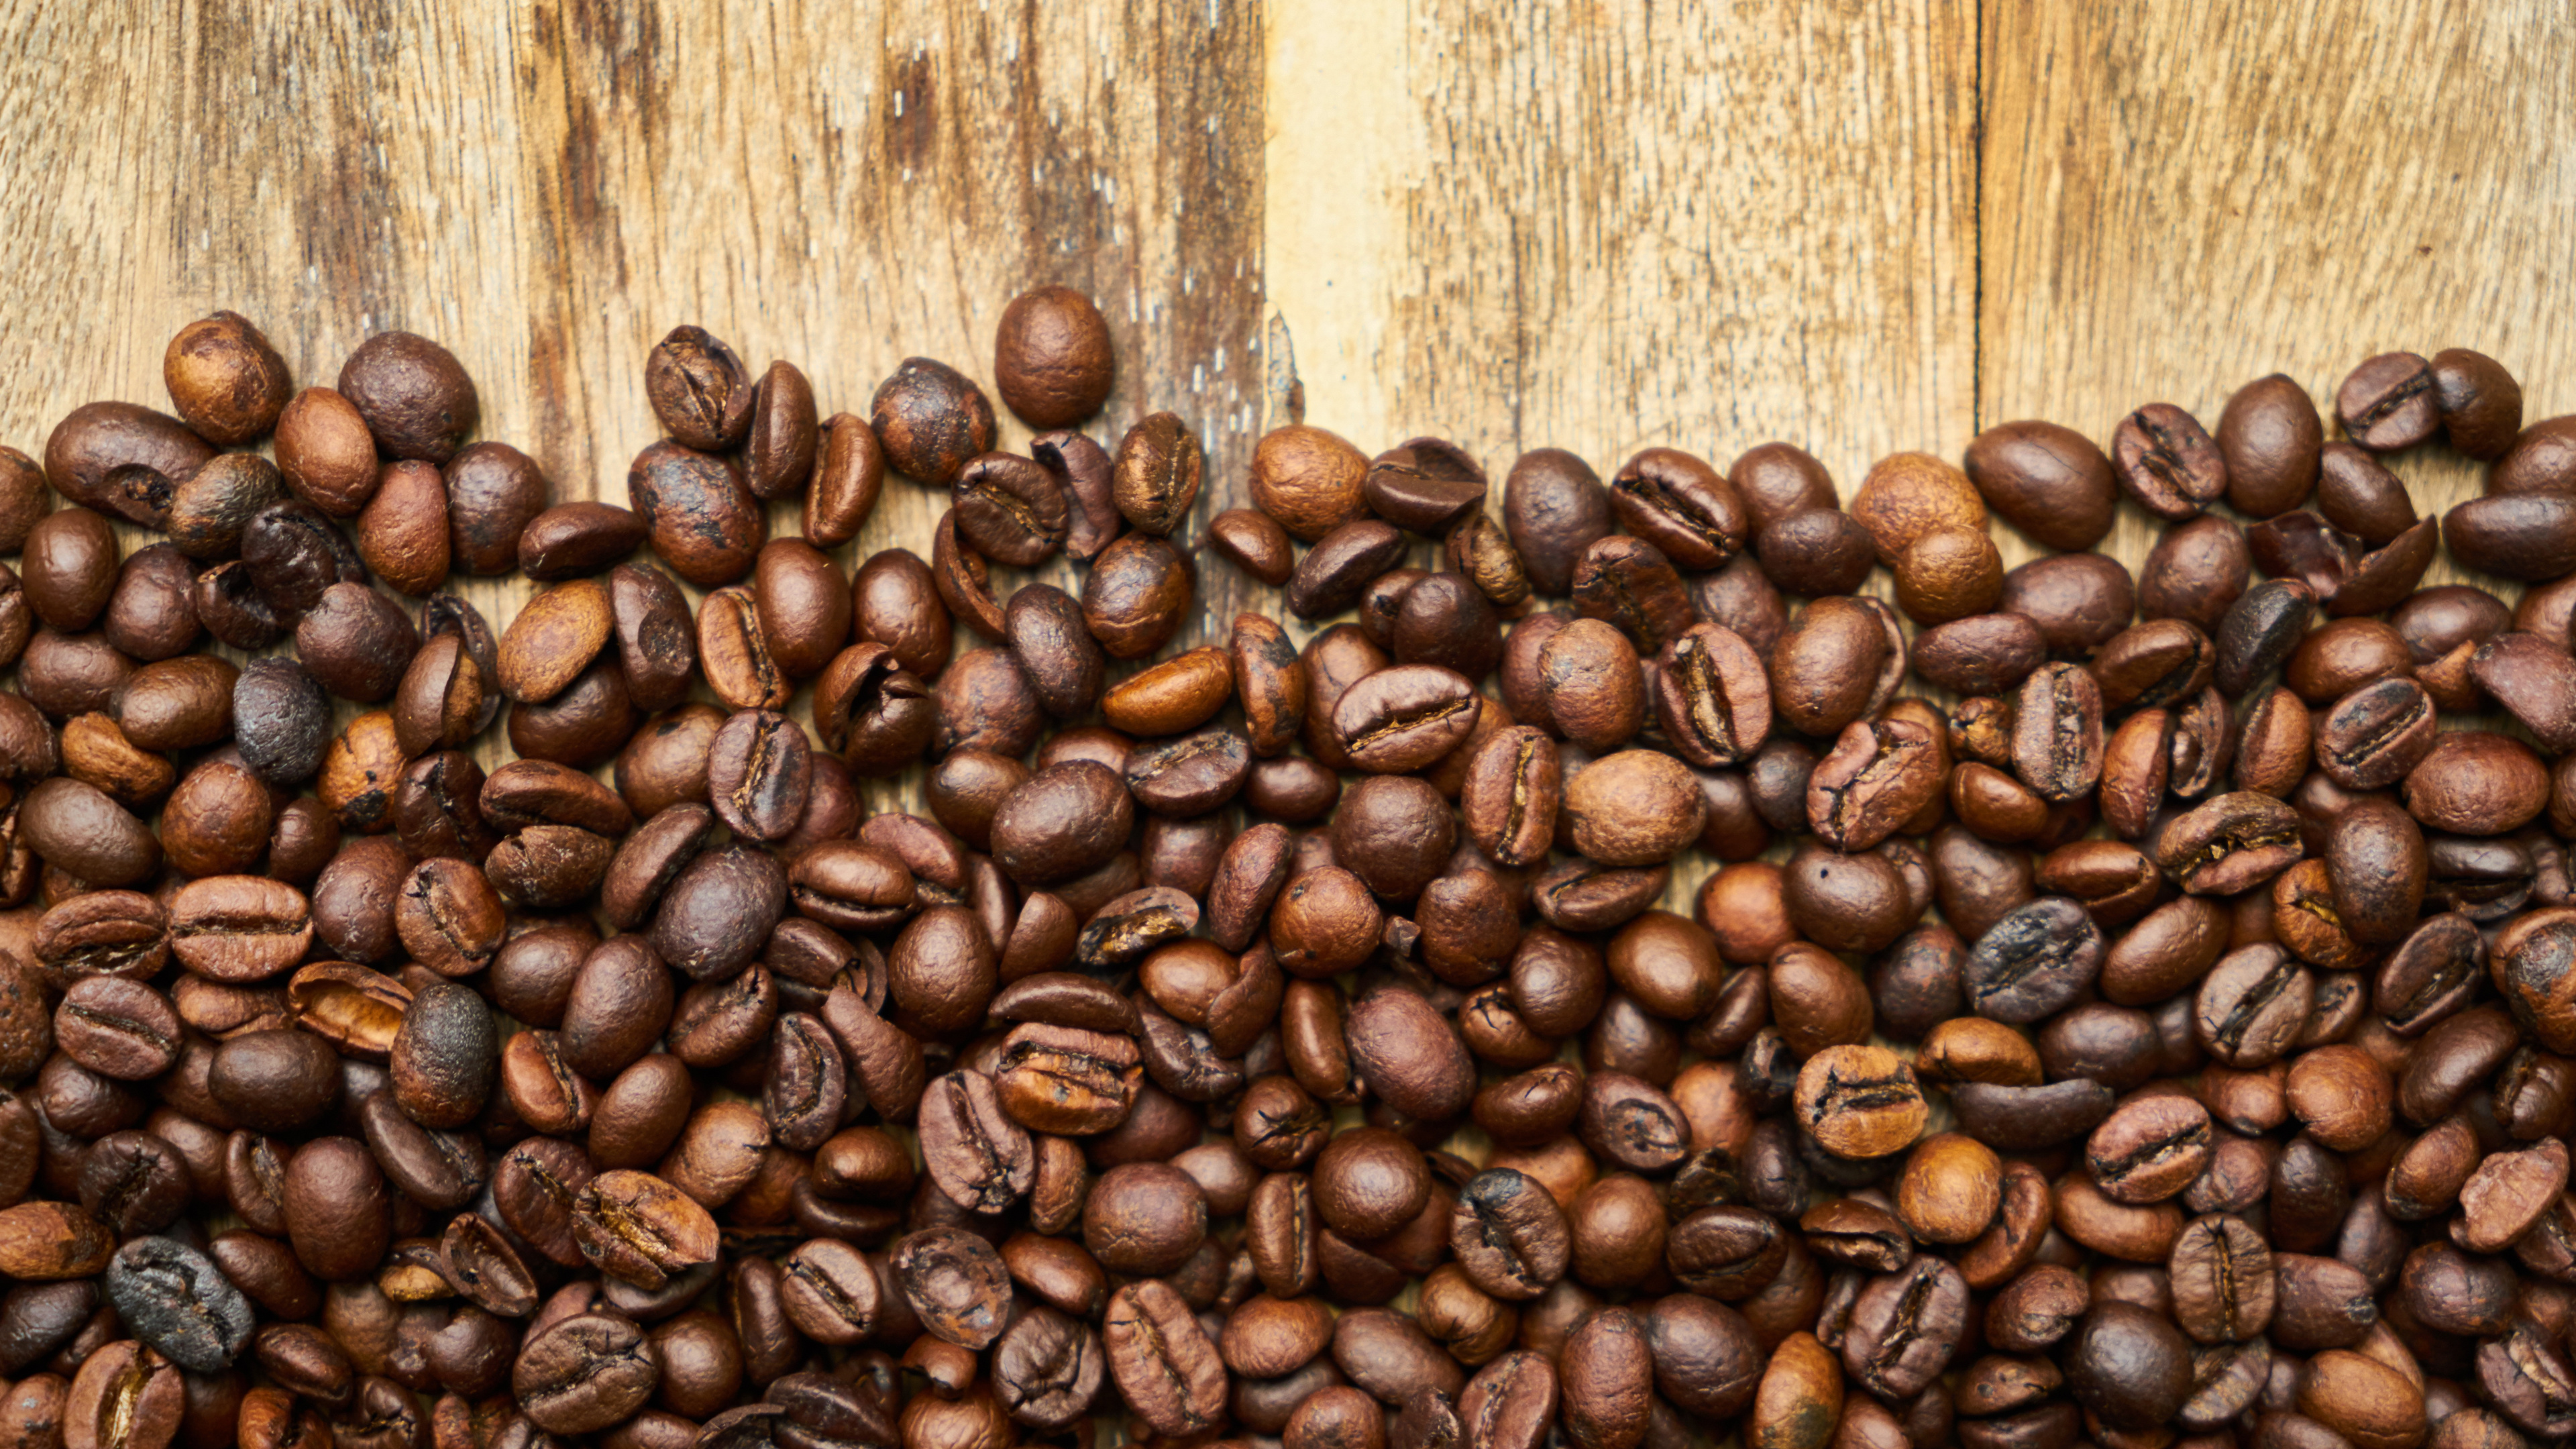 咖啡豆, 科纳咖啡, 牙买加蓝山咖啡, 咖啡因, 棕色 壁纸 3840x2160 允许